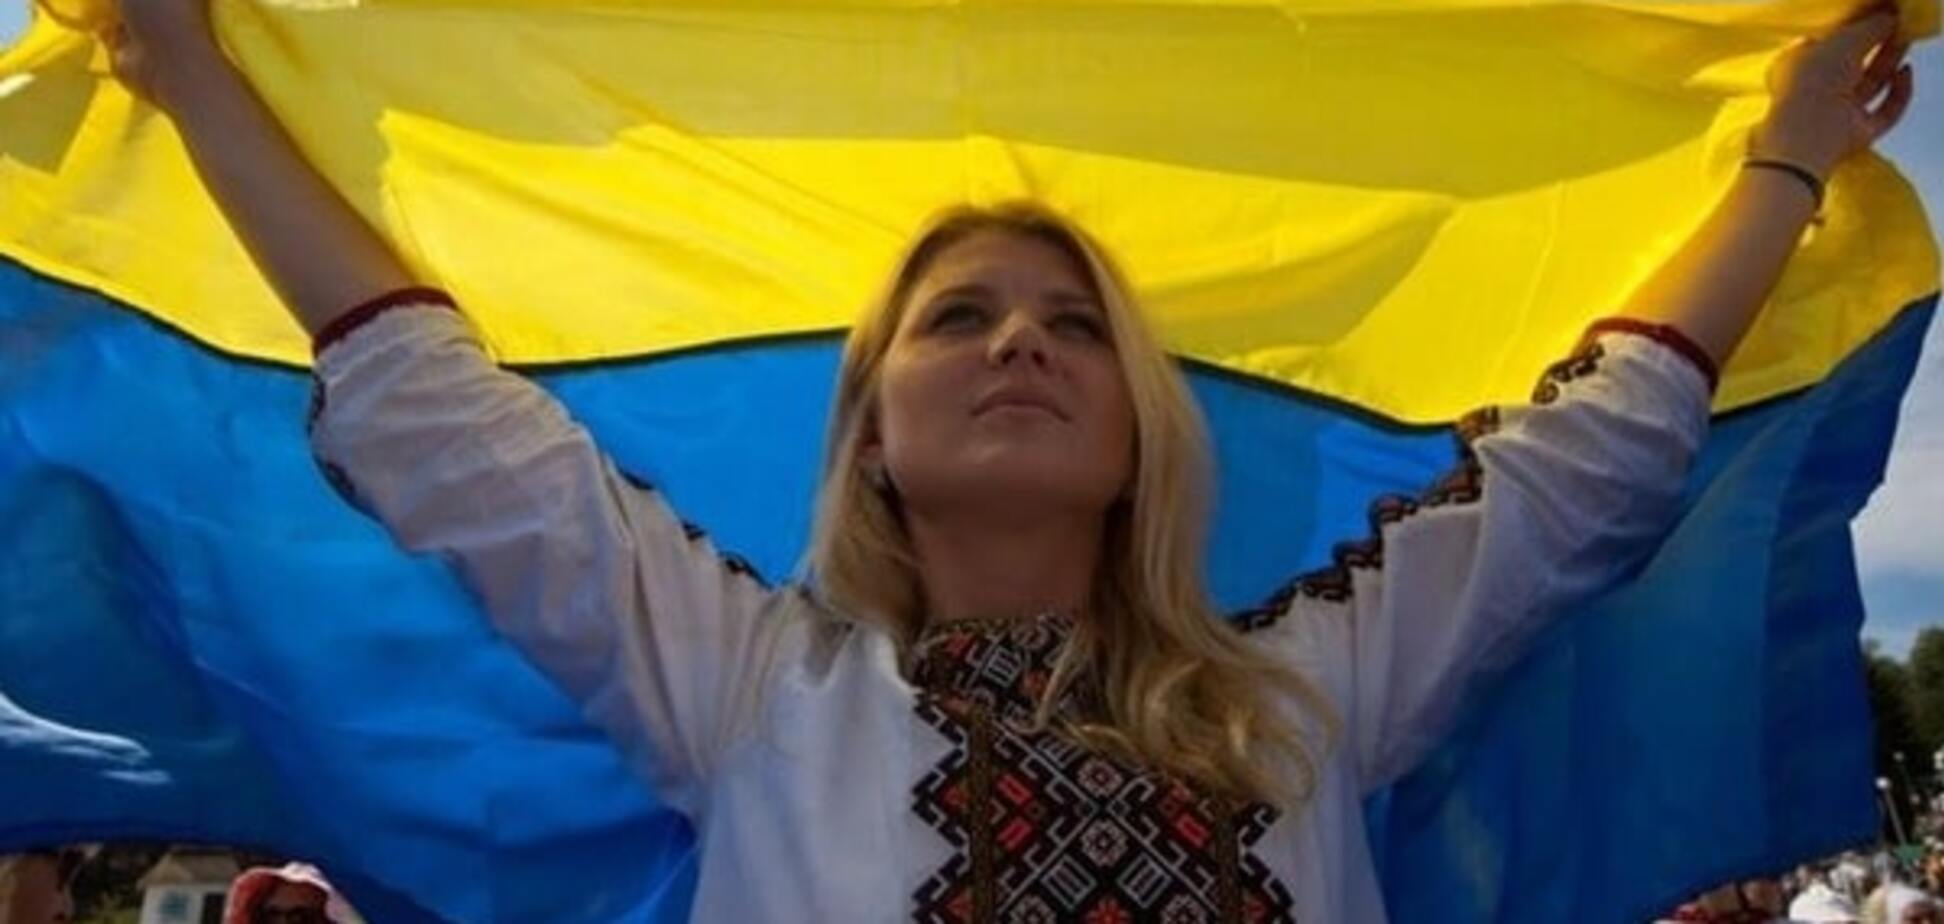 Глібовицький: бути українцем – не означає бути народженим в Україні 